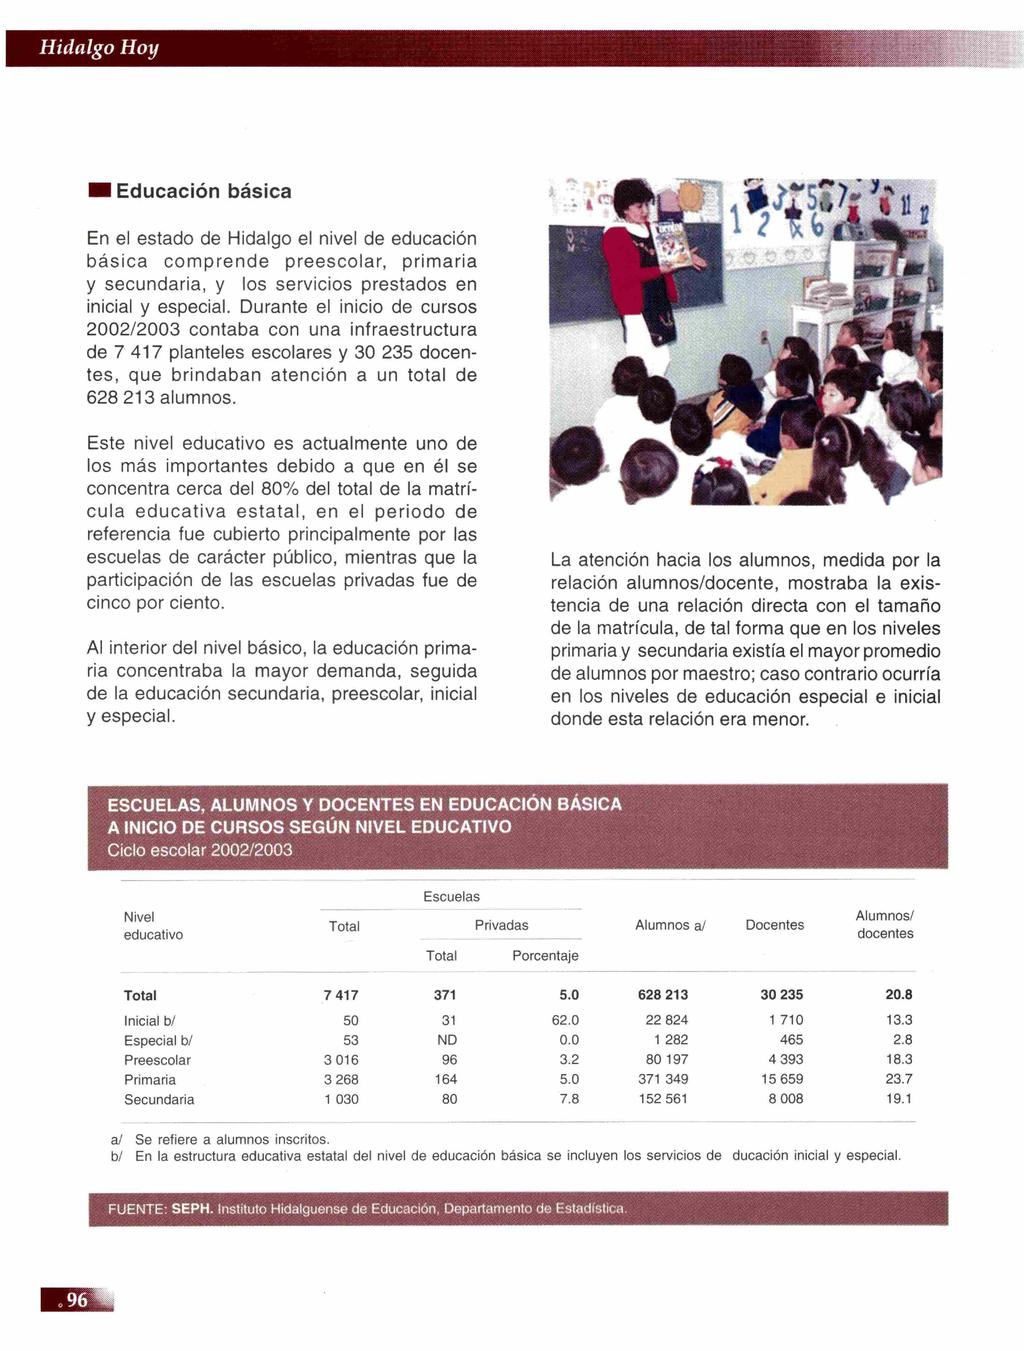 Educación básica En el estado de Hidalgo el nivel de educación básica comprende preescolar, primaria y secundaria, y los servicios prestados en inicial y especial.